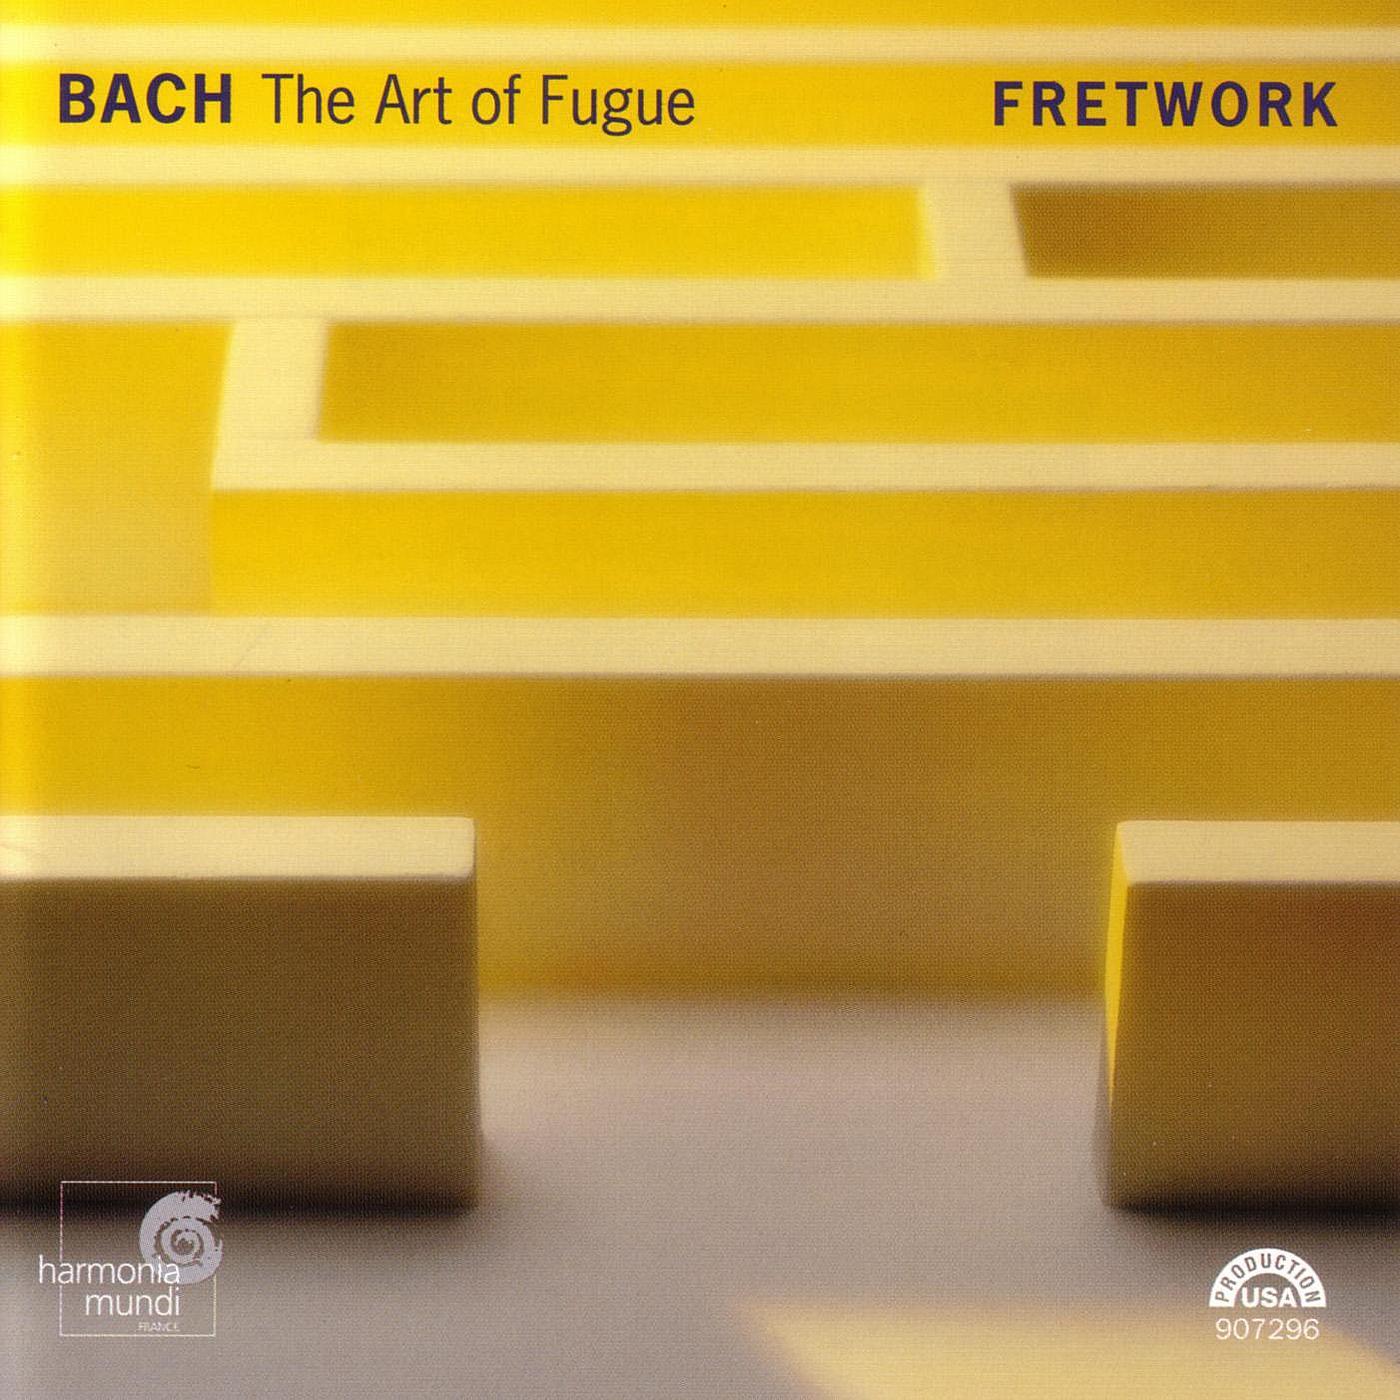 The Art of Fugue, BWV 1080: Contrapunctus 12 - inversus